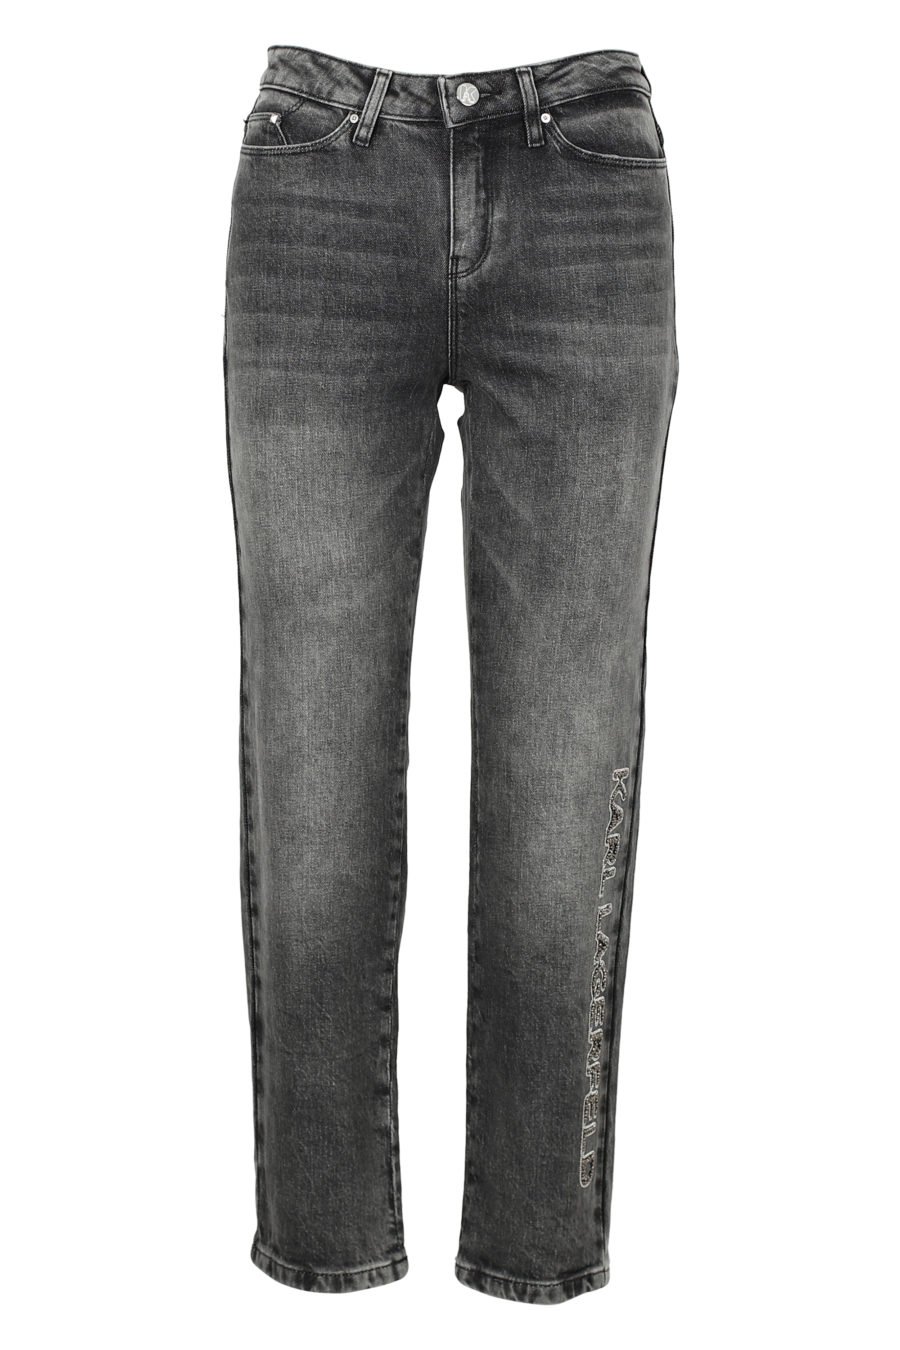 Pantalón tejano gris con logo abalorios - IMG 3155